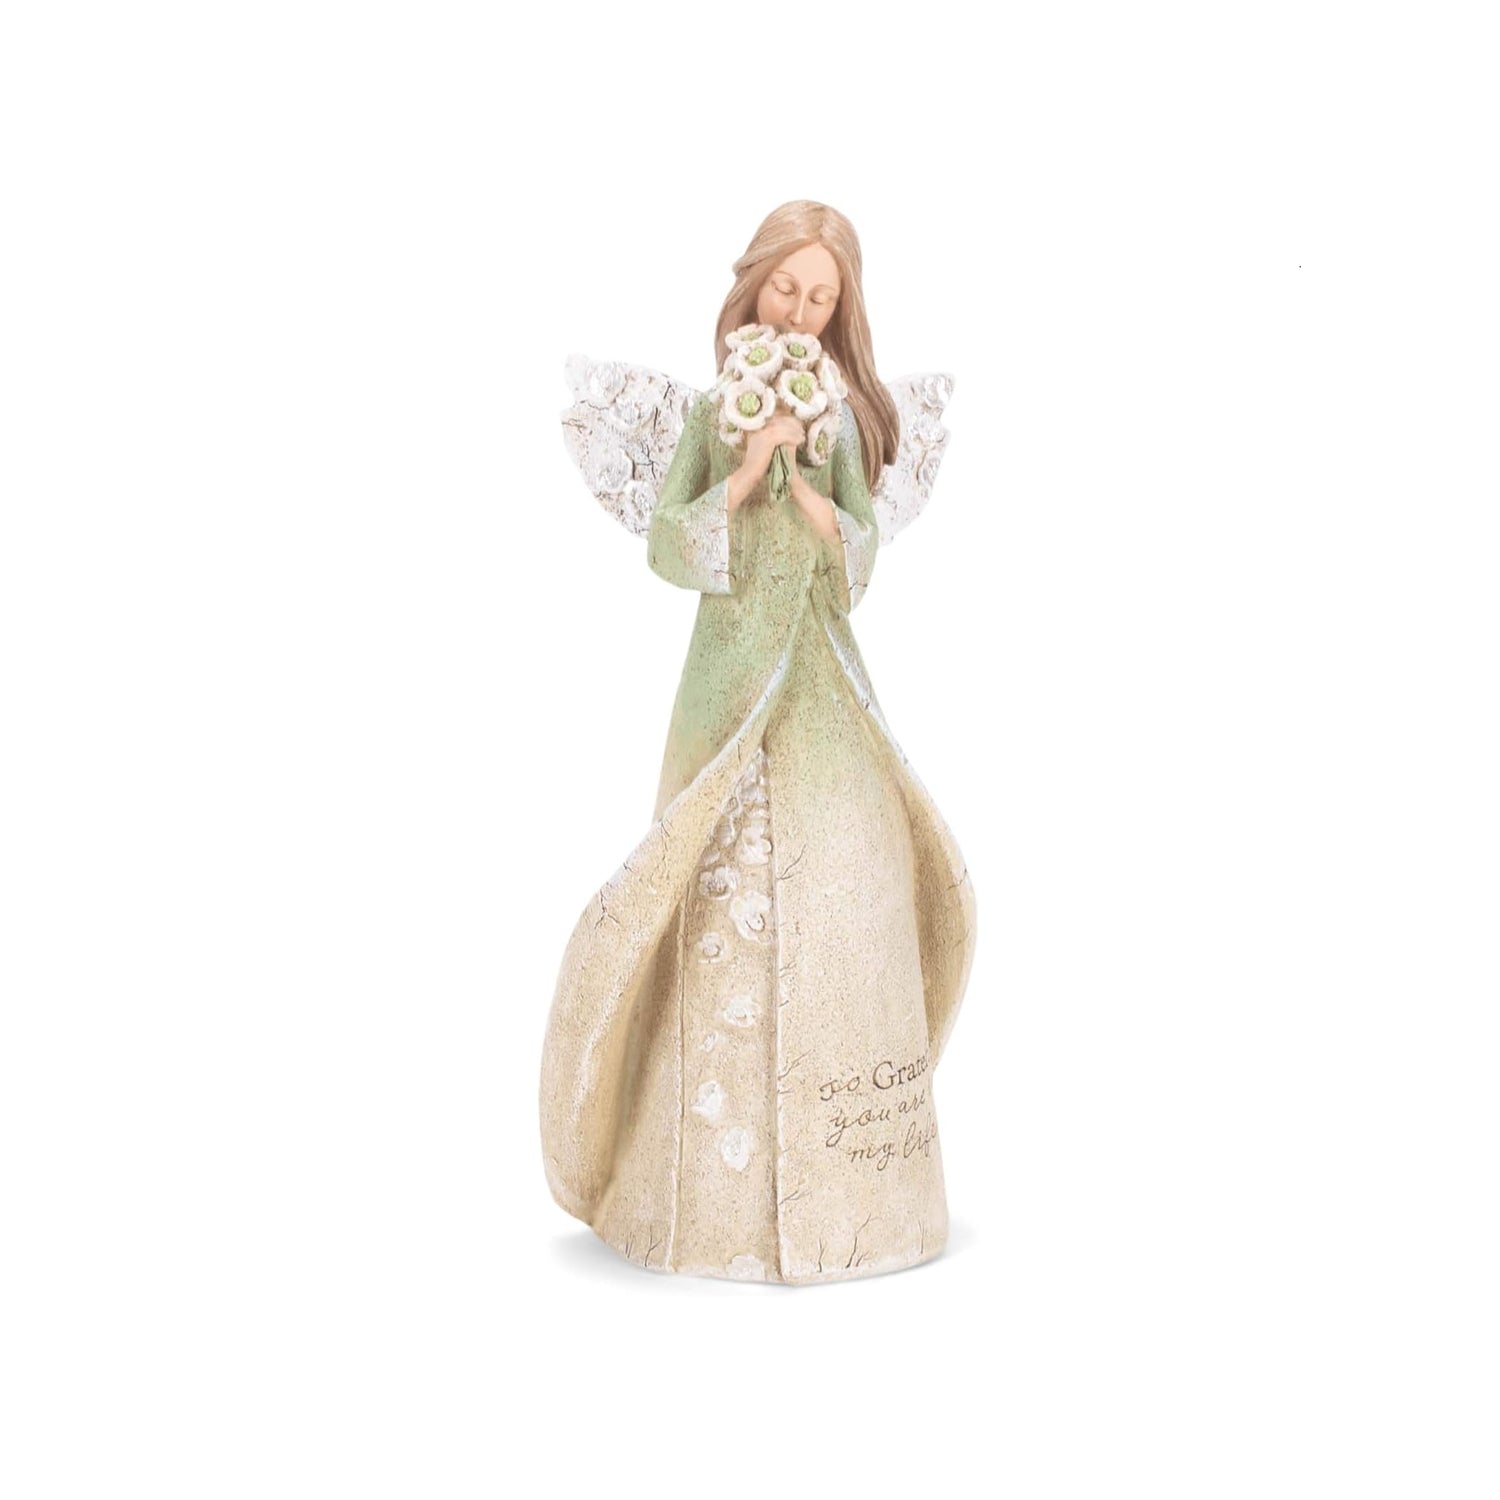 Roman So Grateful Angel Figurine by Karen Hahn